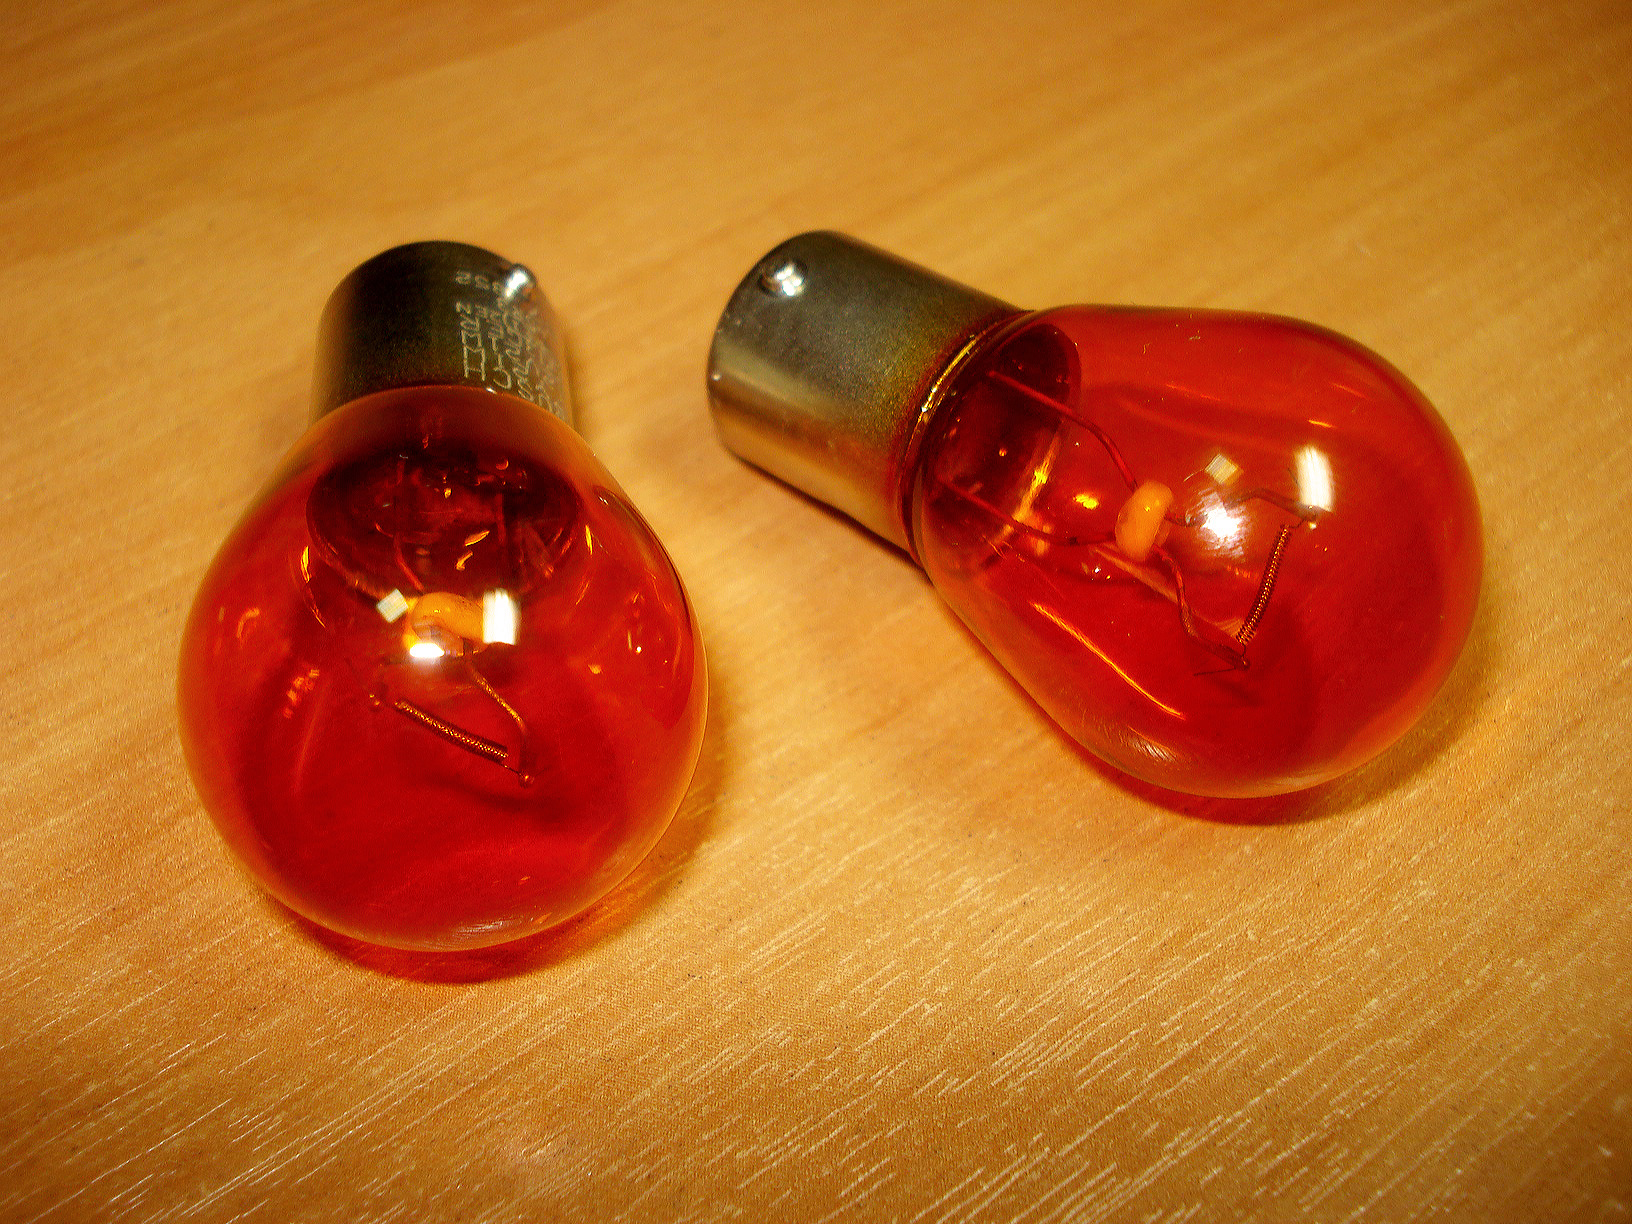 Лампочка 1 красный цвет. Оранжевая лампа накаливания. Цапонлак лампочки. Покрасить лампочки для поворотника. Покраска лампочек цапонлаком.